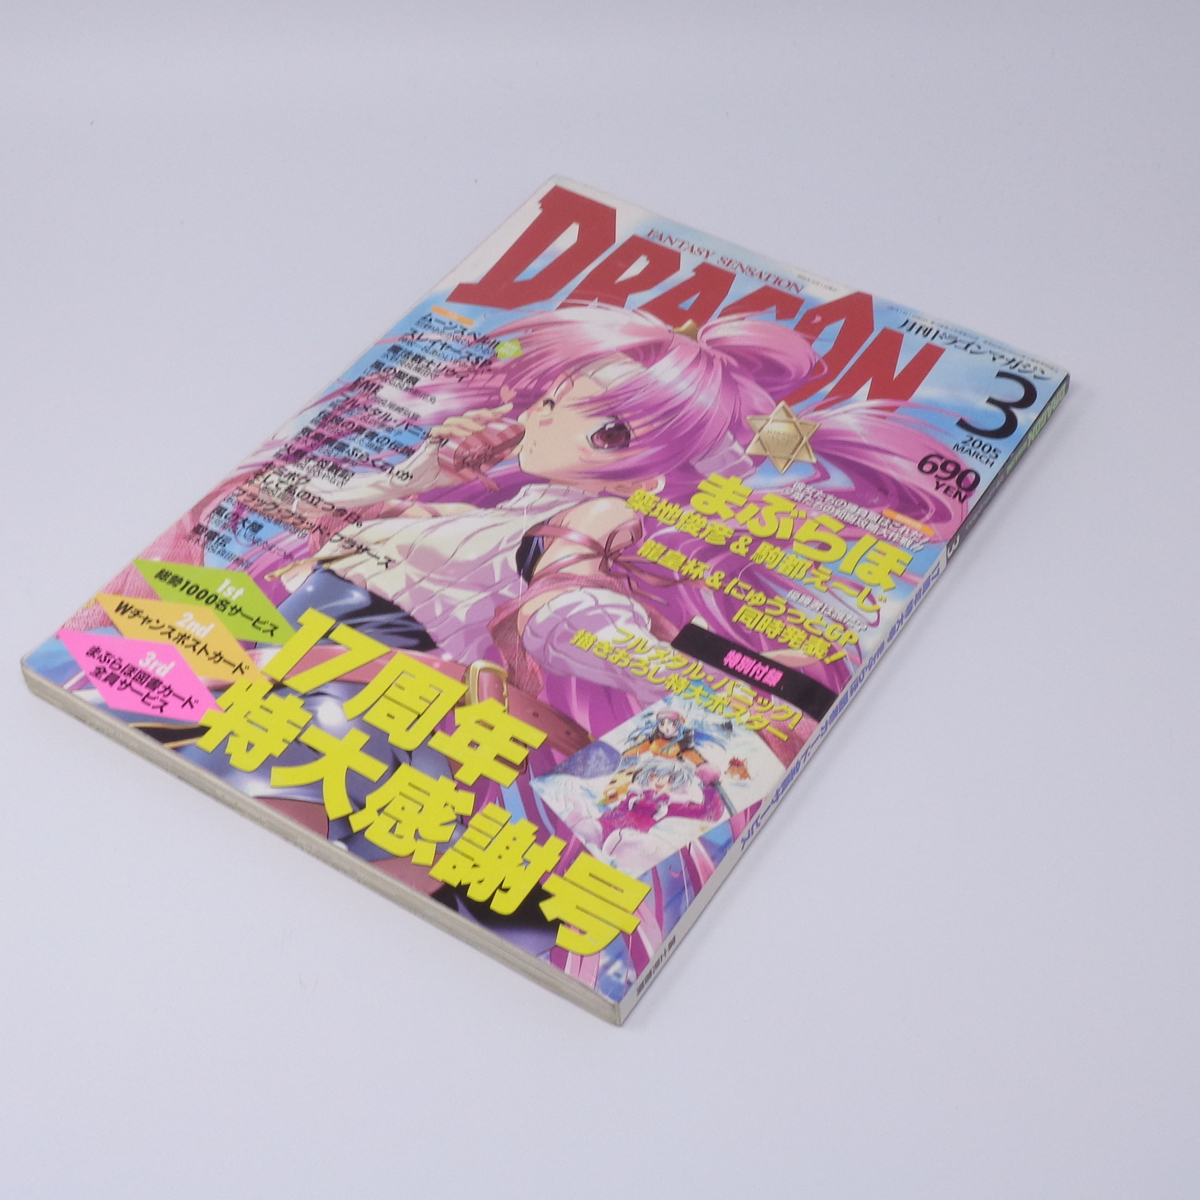  ежемесячный Dragon журнал DRAGON MAGAZINE 2005 год 3 месяц номер отдельный выпуск дополнение постер нет /..../ Slayers SP./ журнал [Free Shipping]